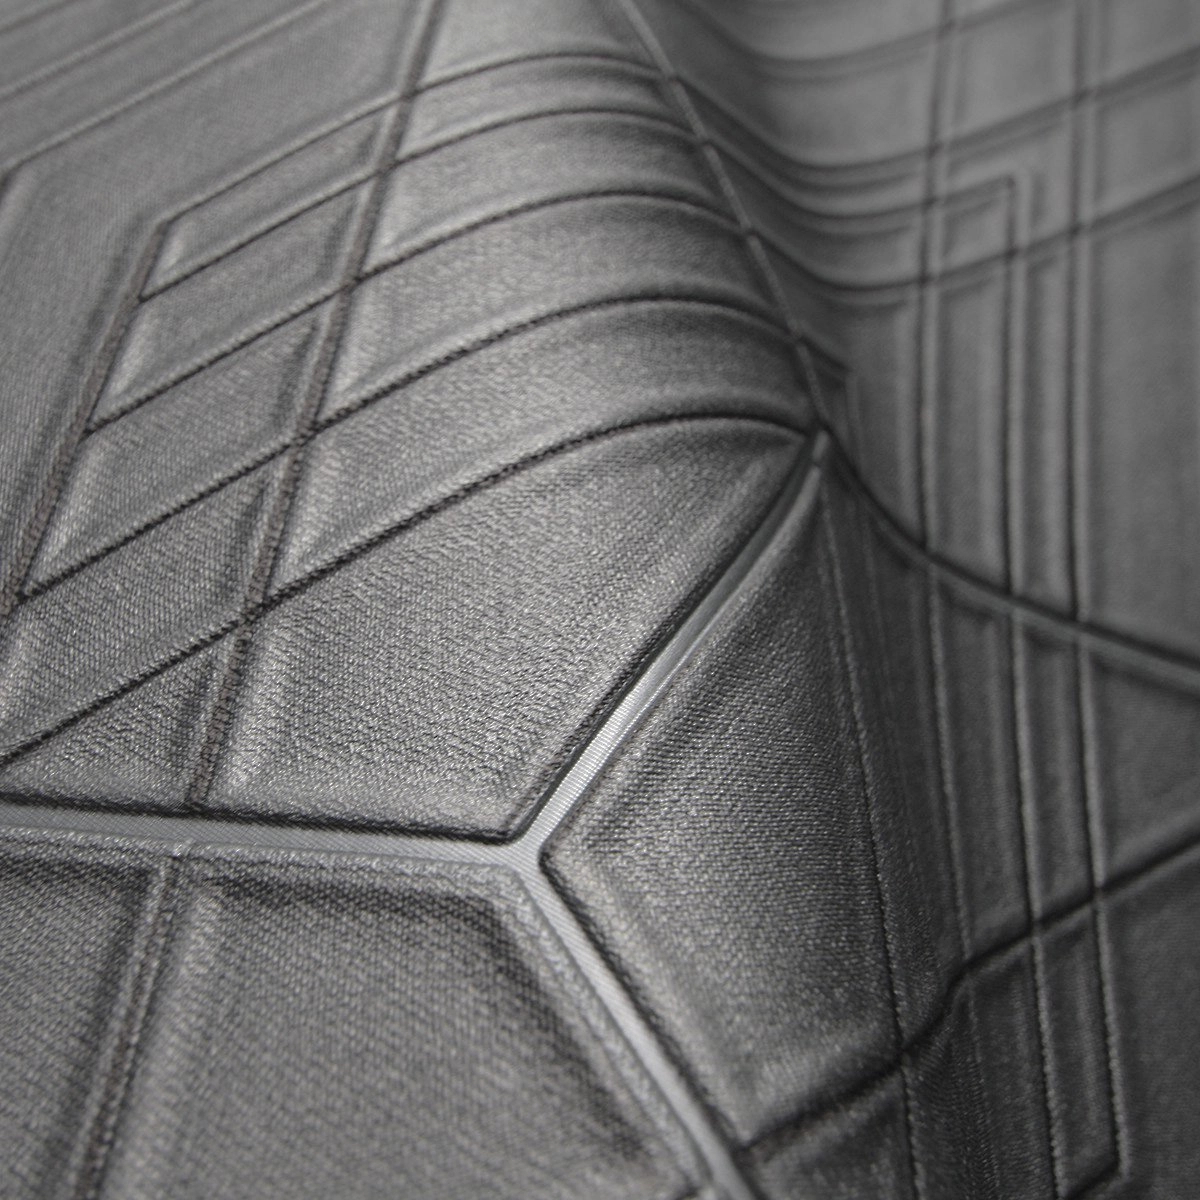 Olasz luxus tapéta antracit struktúrált geometrikus mintával 70cm széles